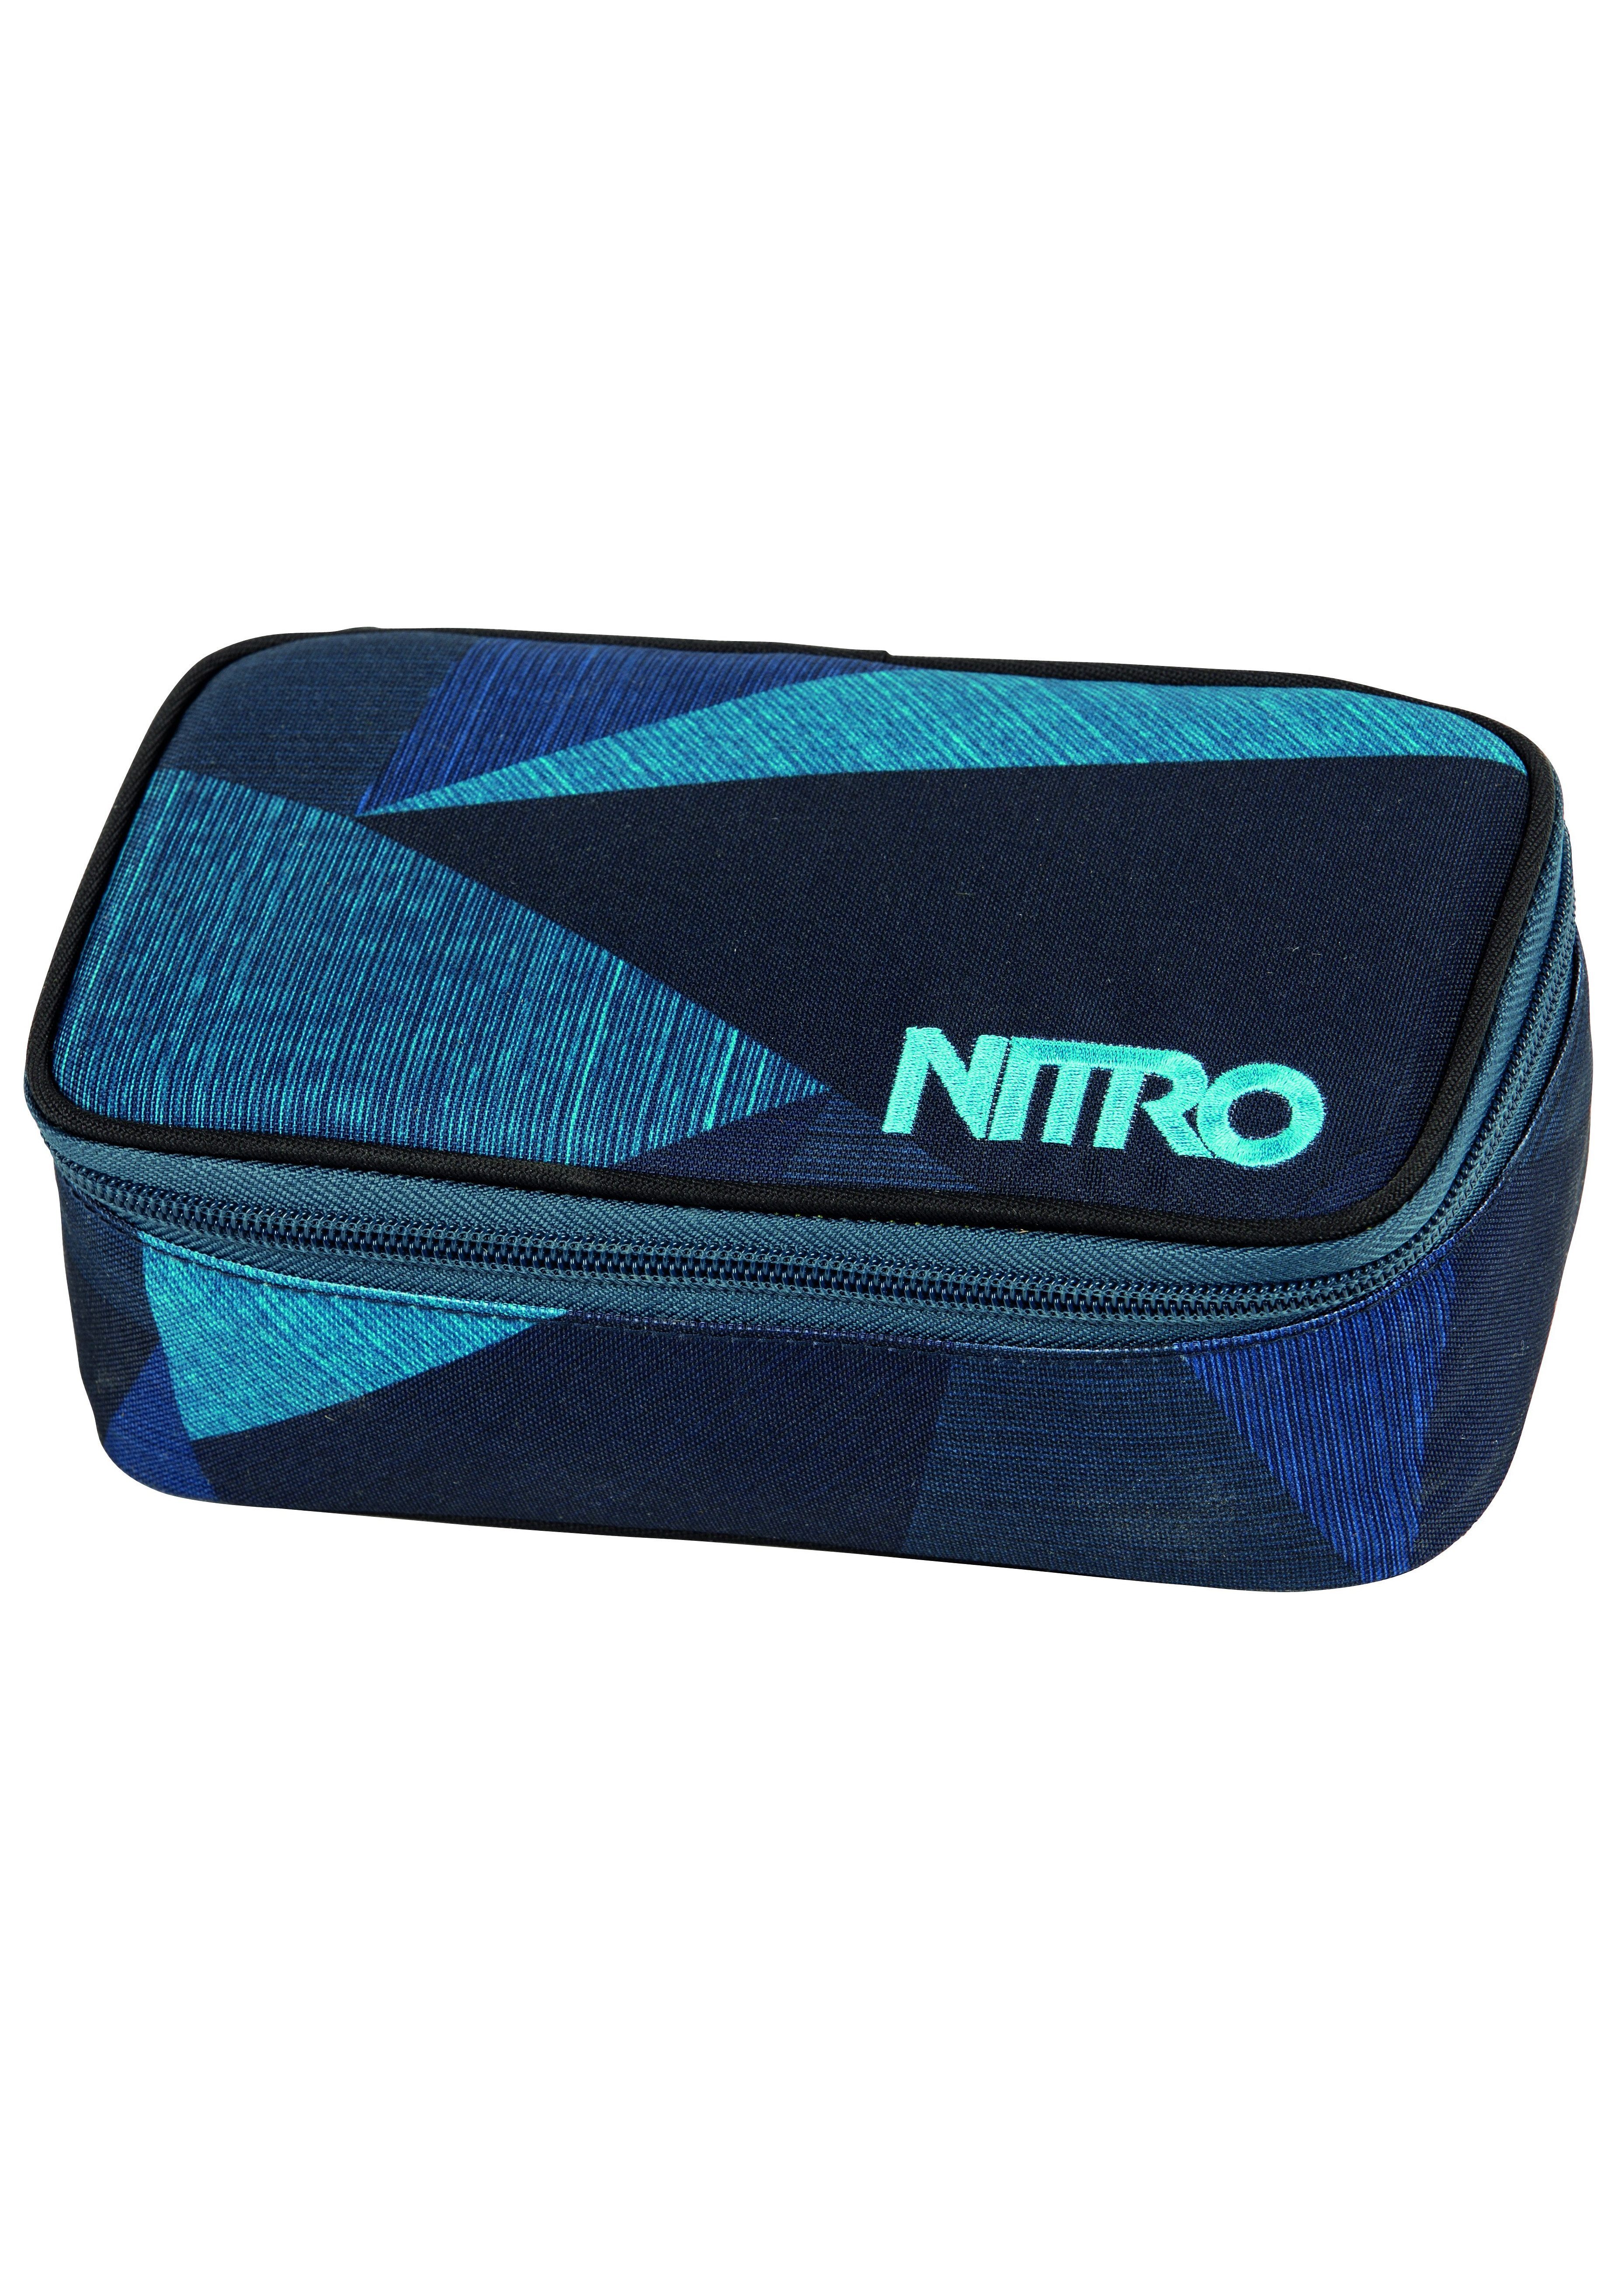 NITRO Pencil Box, XL, Federtasche Faulenzer Etui Schlampermäppchen, Stifte Case Federmäppchen,